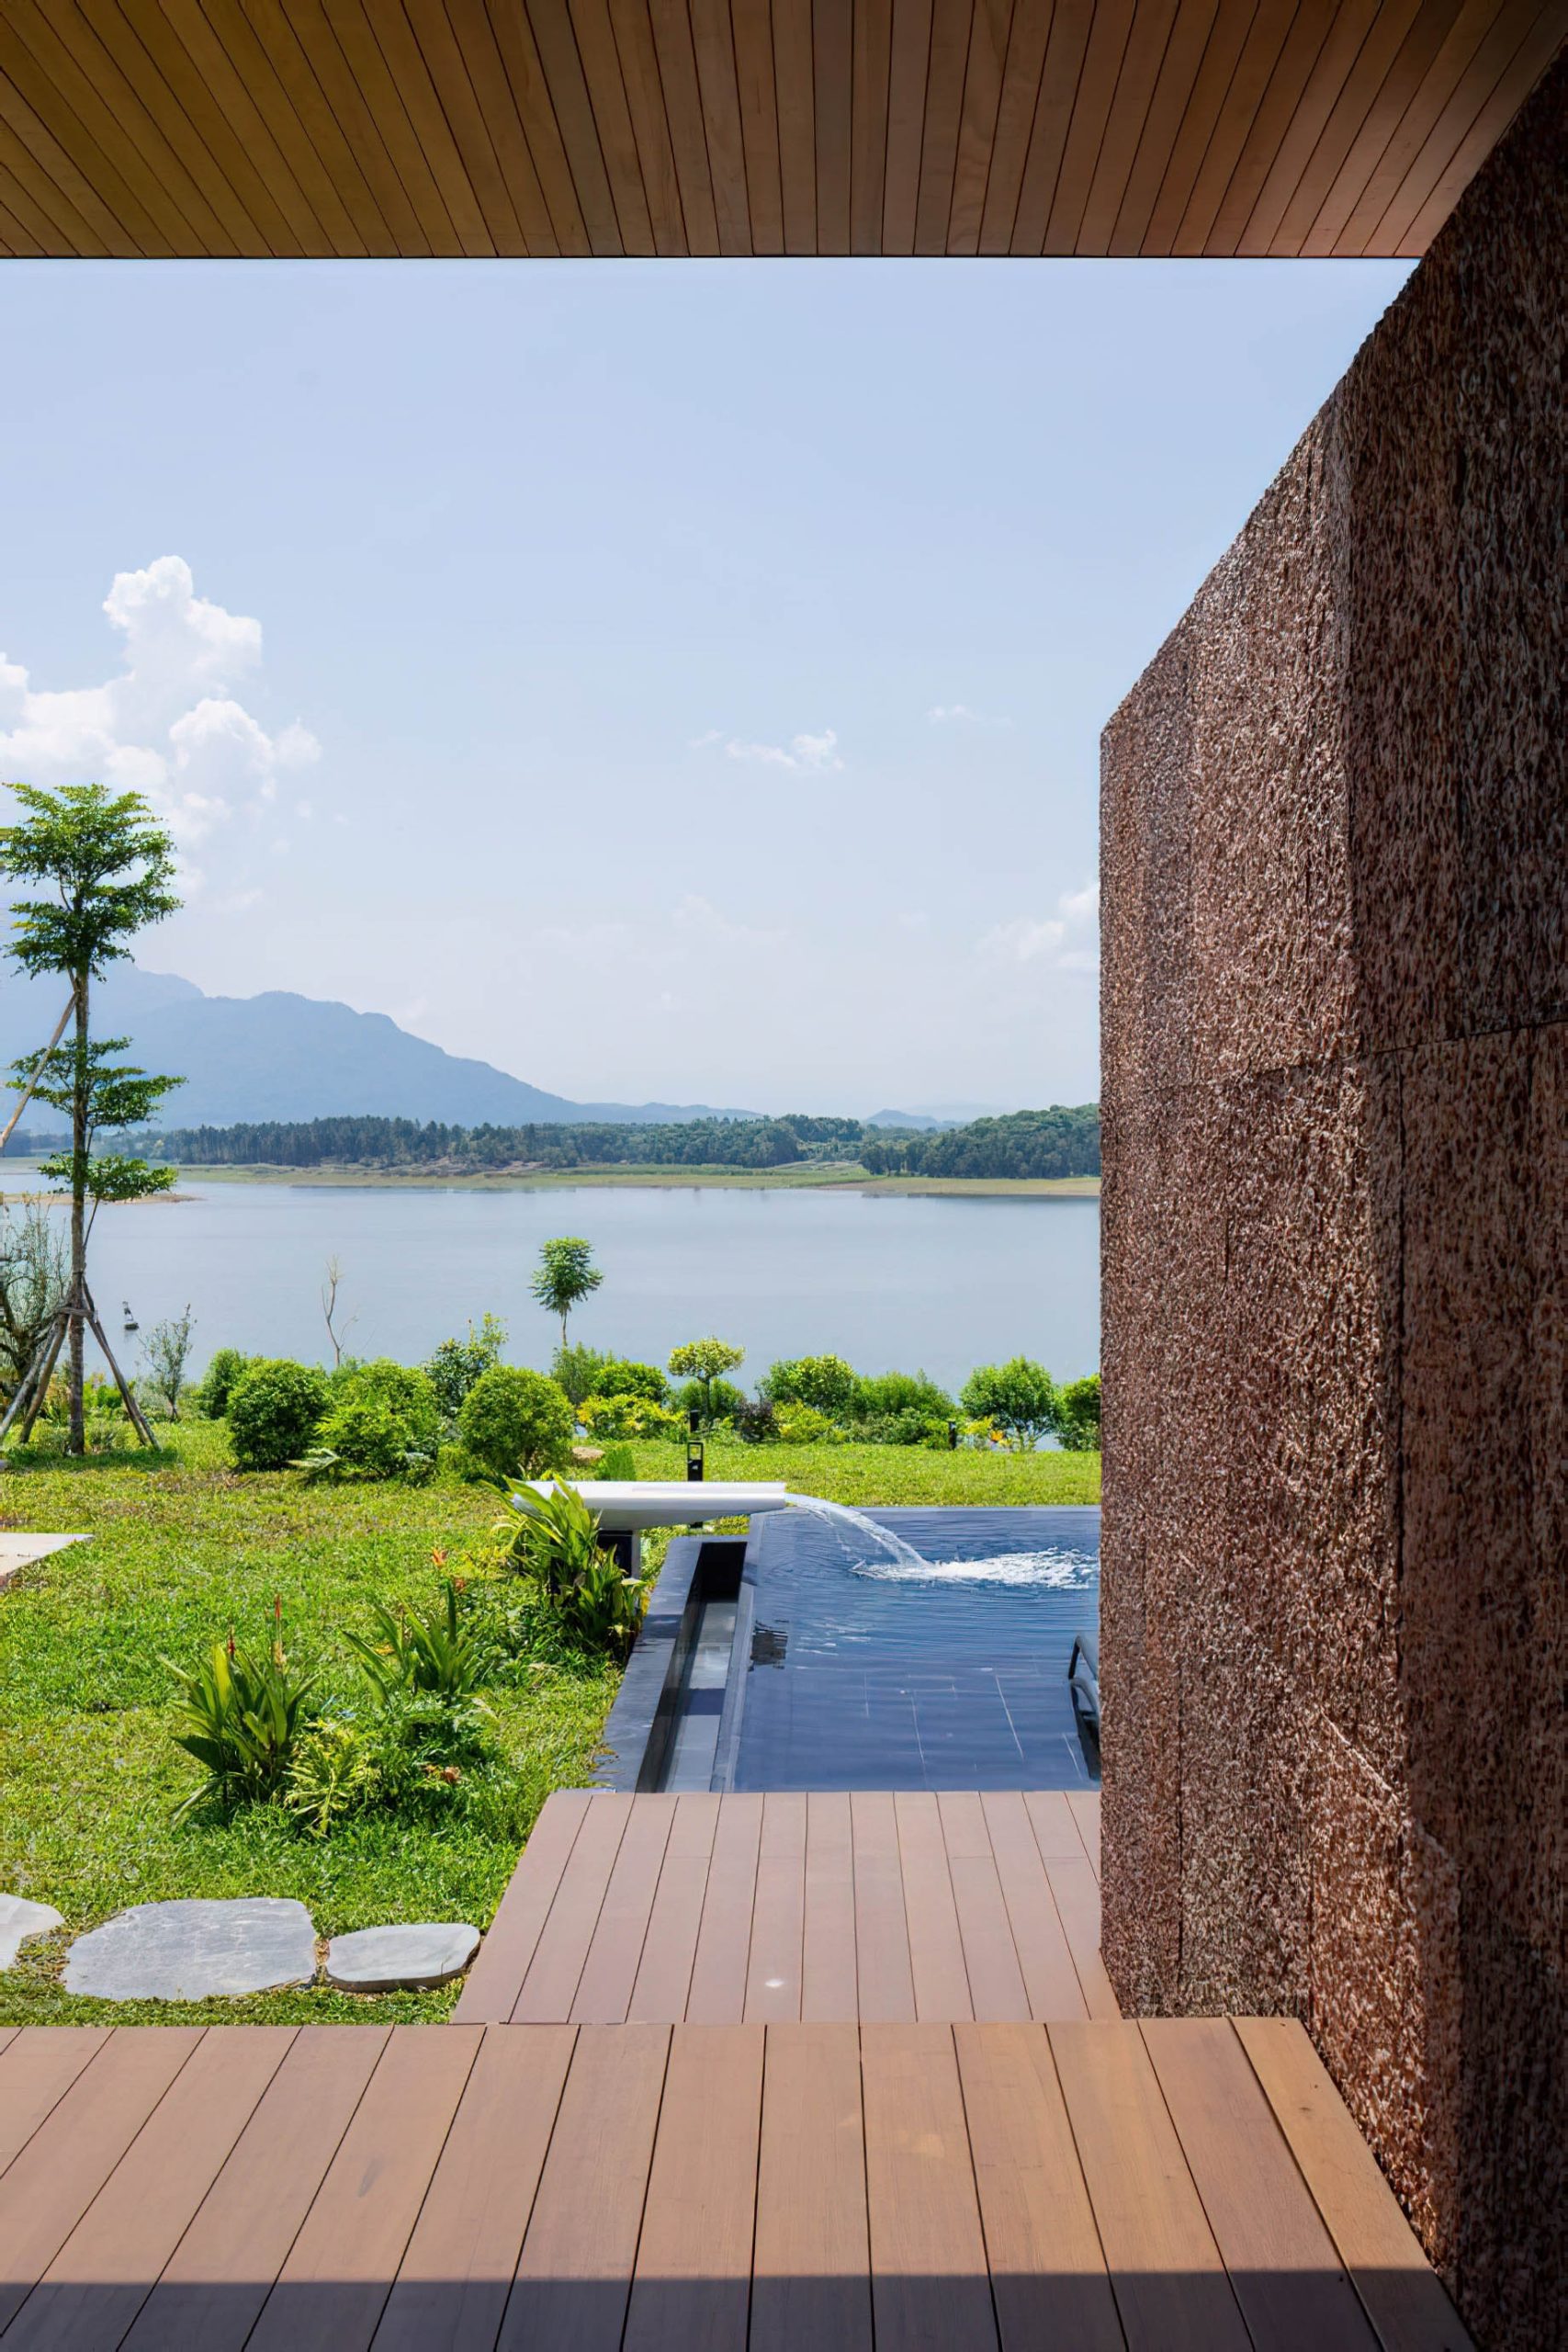 SuoiHai Lake Tan Vien Mountain View Villa – Ho Suoi Hai, Ba Vi, Hanoi, Vietnam